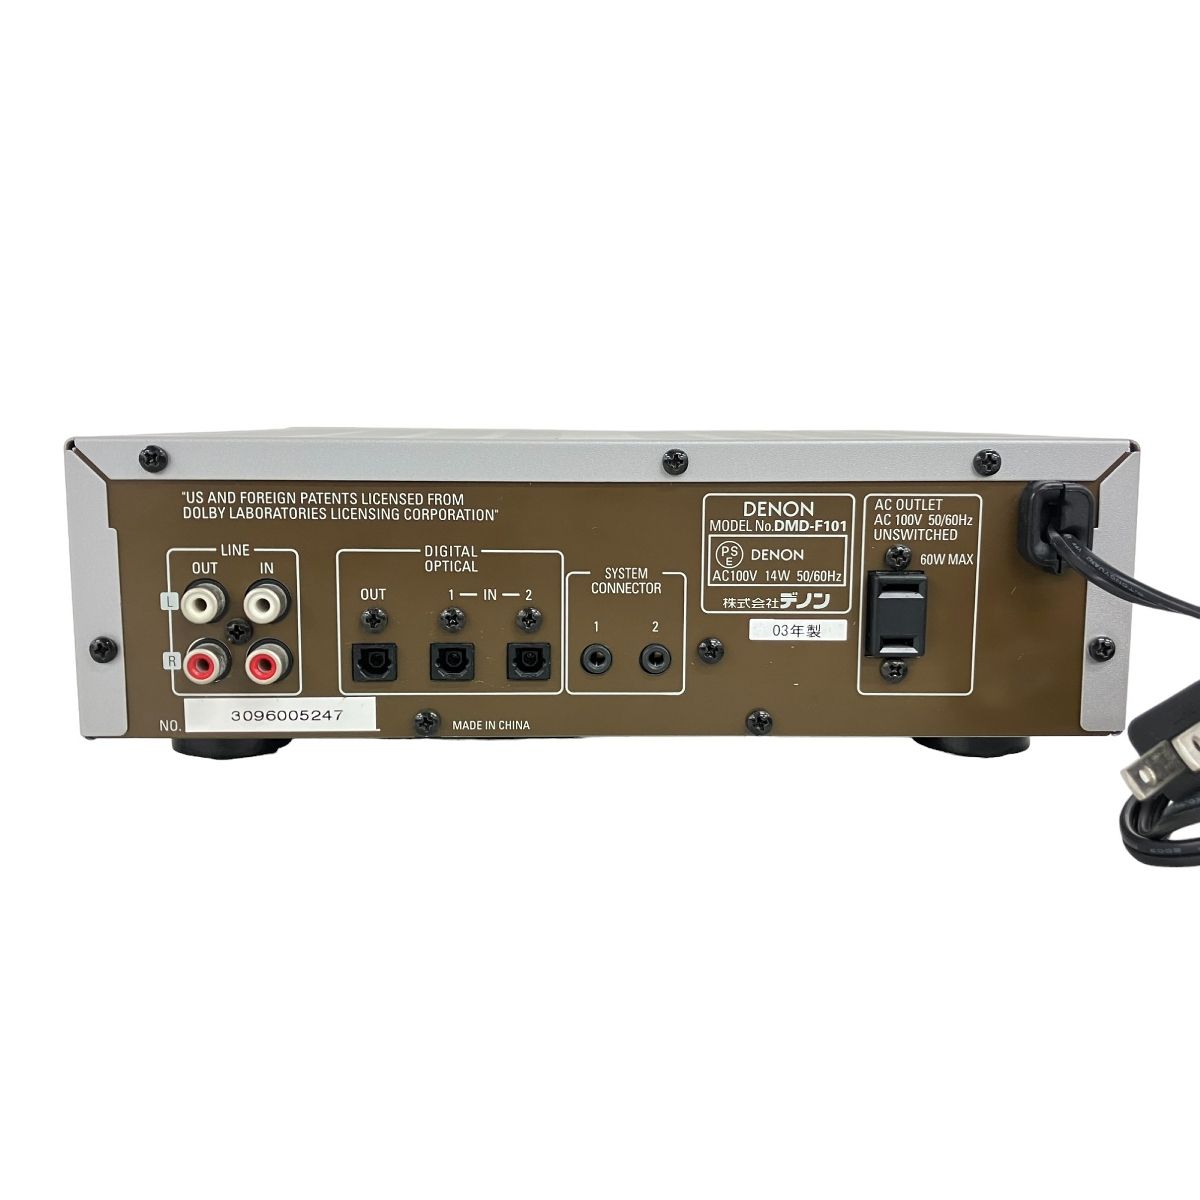 DENON デノン DMD-F101 MD デッキ オーディオ 音響機器 2003年製 中古 K9036682 - メルカリ